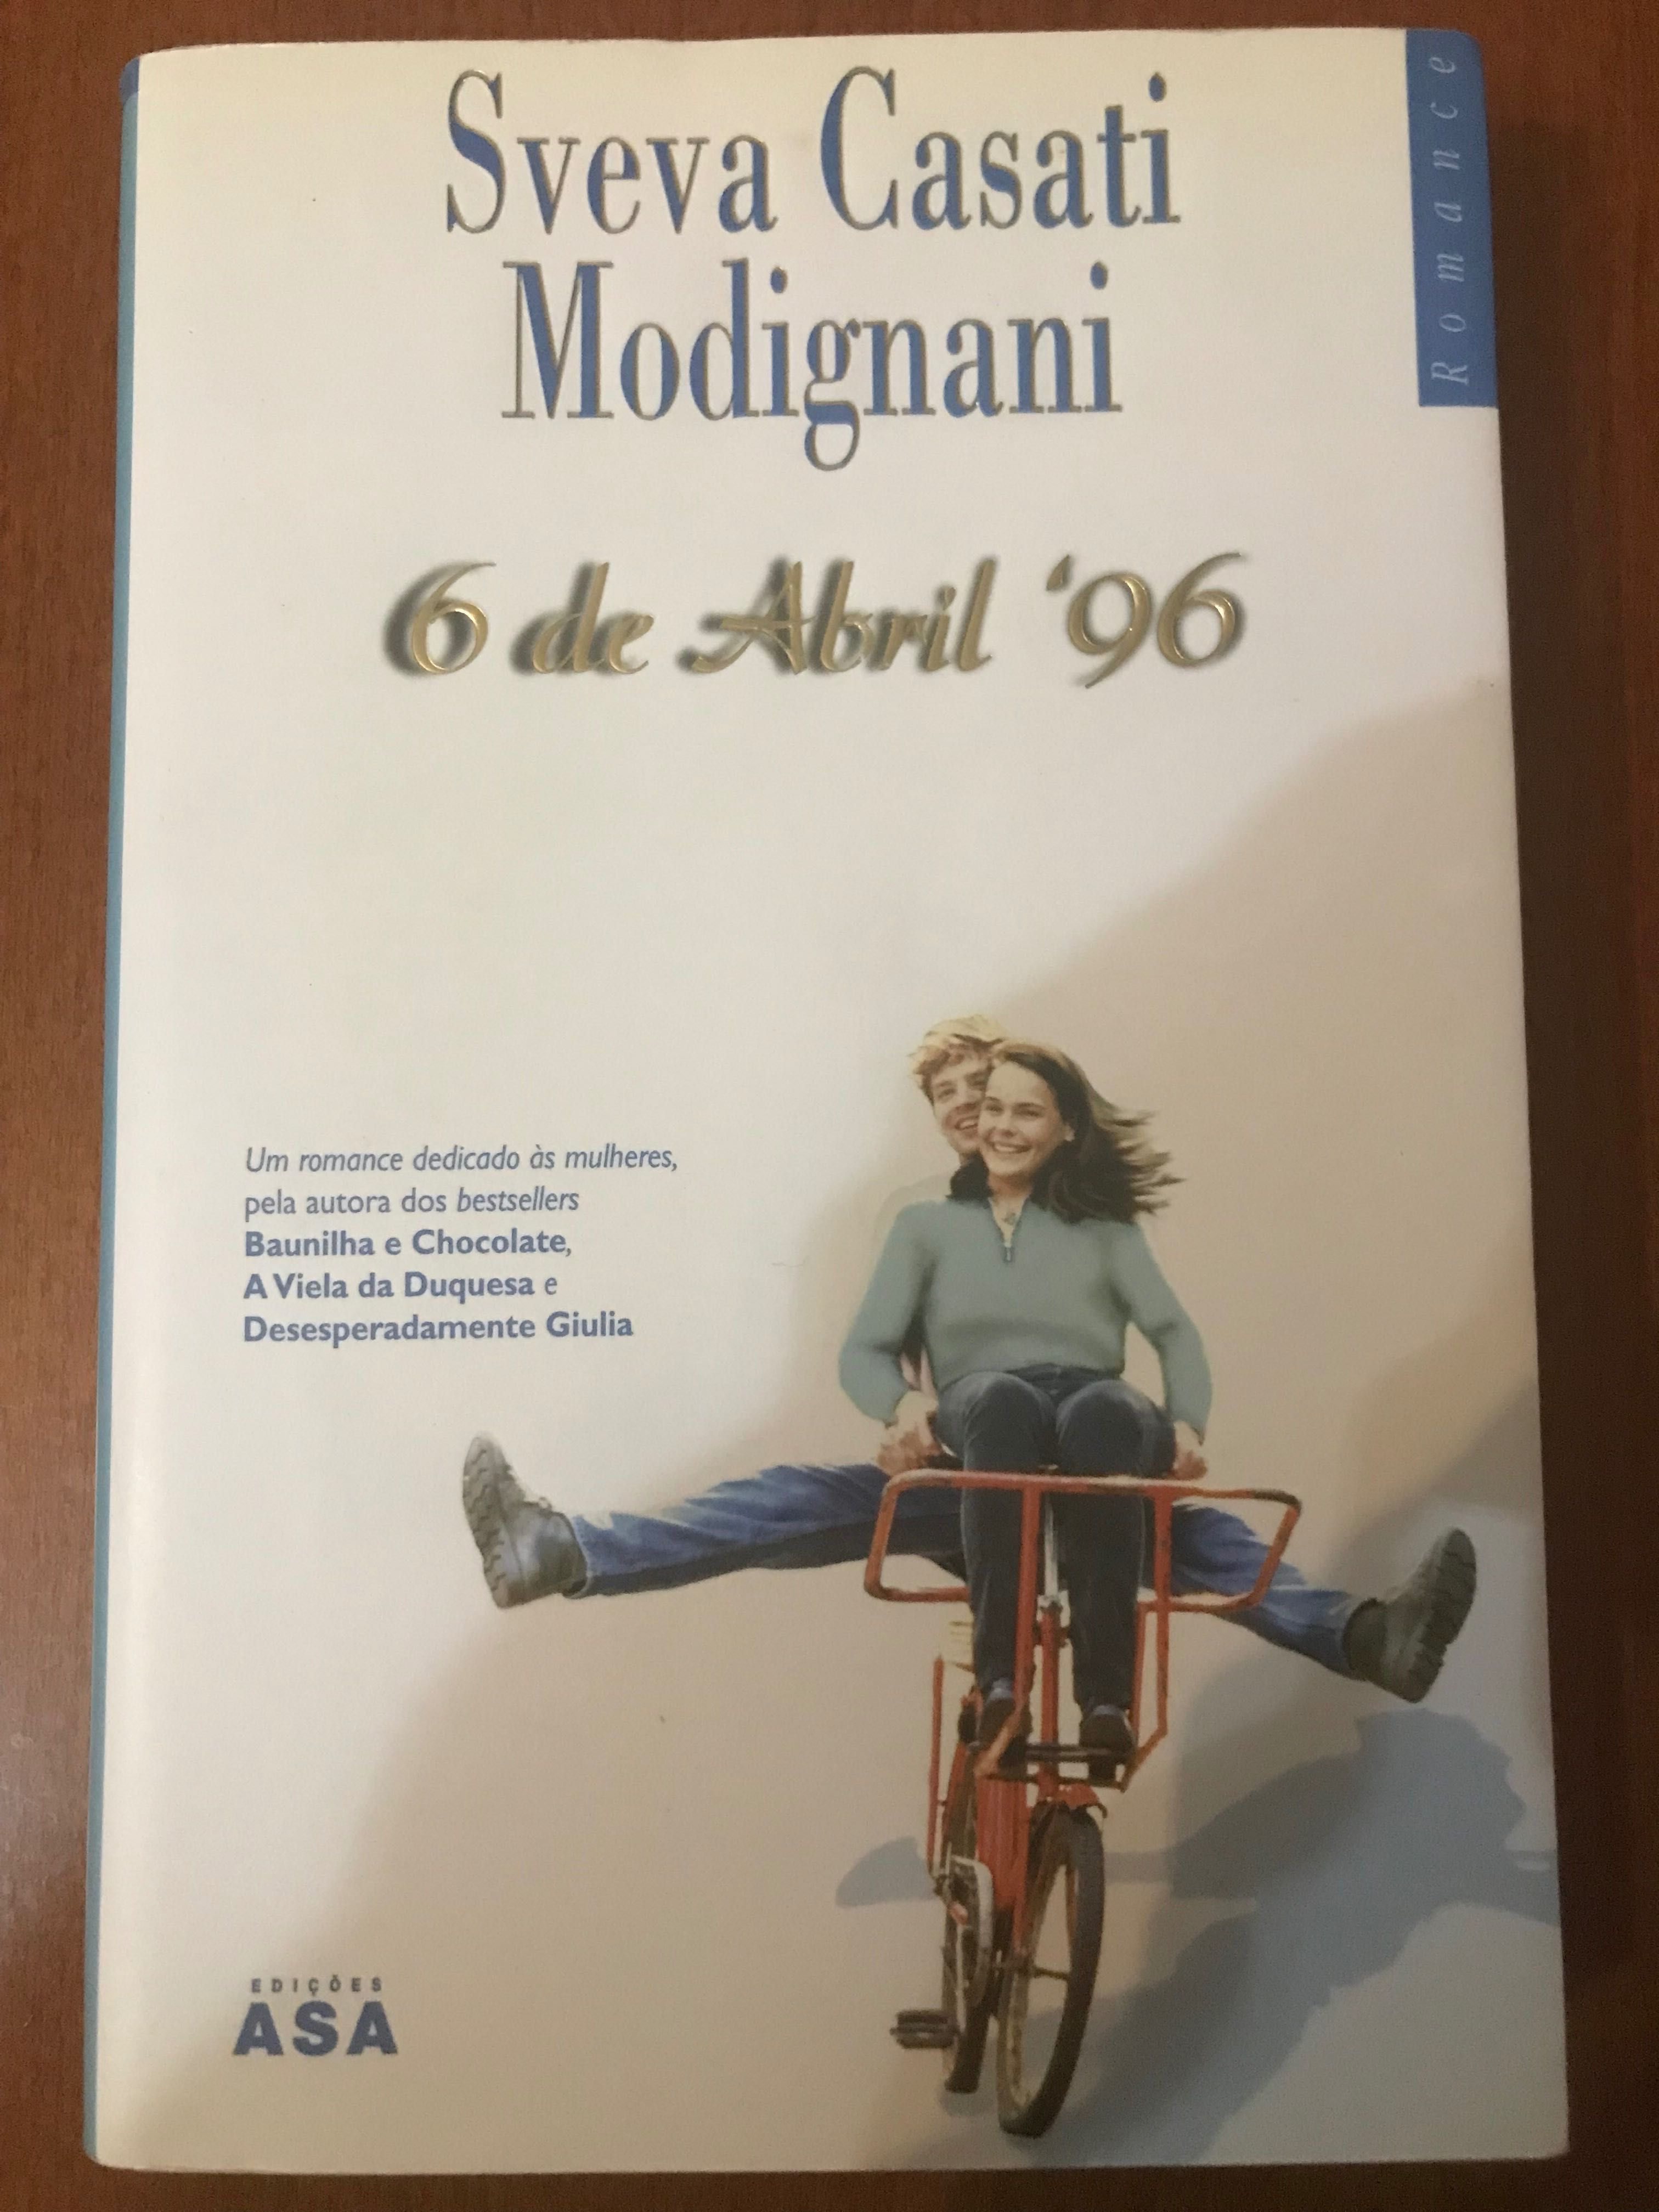 Sveva Casati Modignami "6 de Abril de 96"